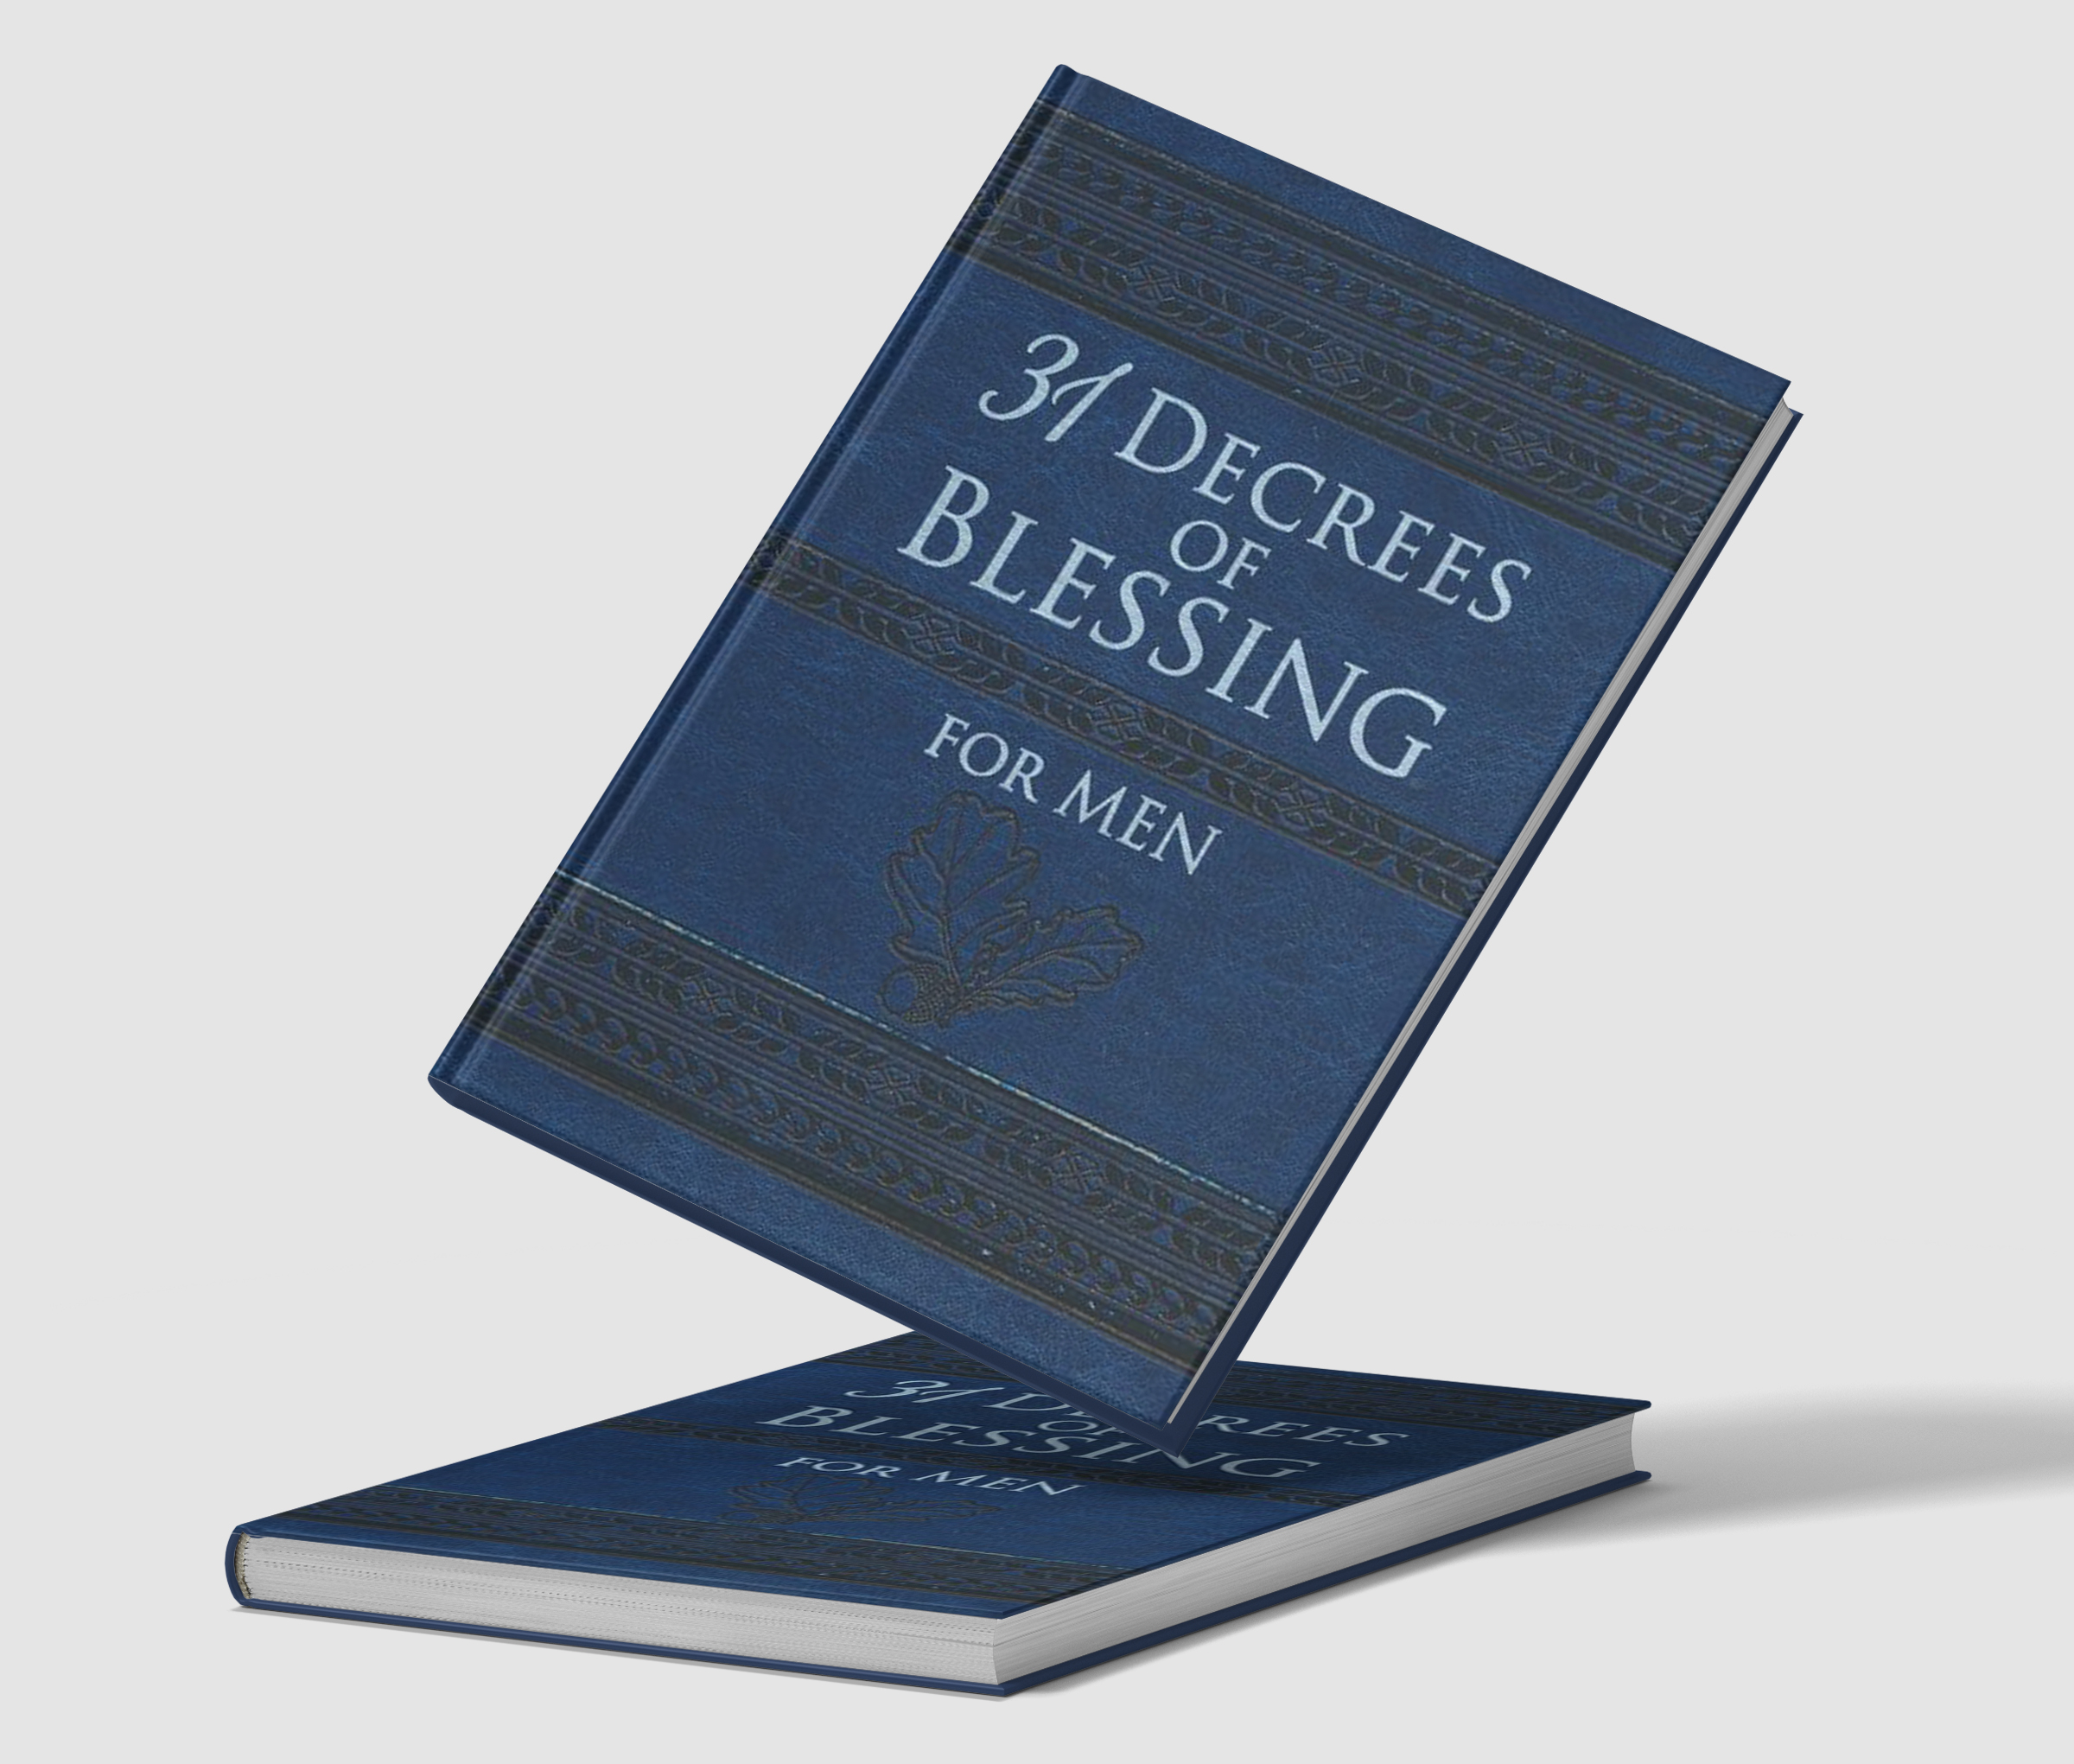 31-decrees-of-blessing-for-men